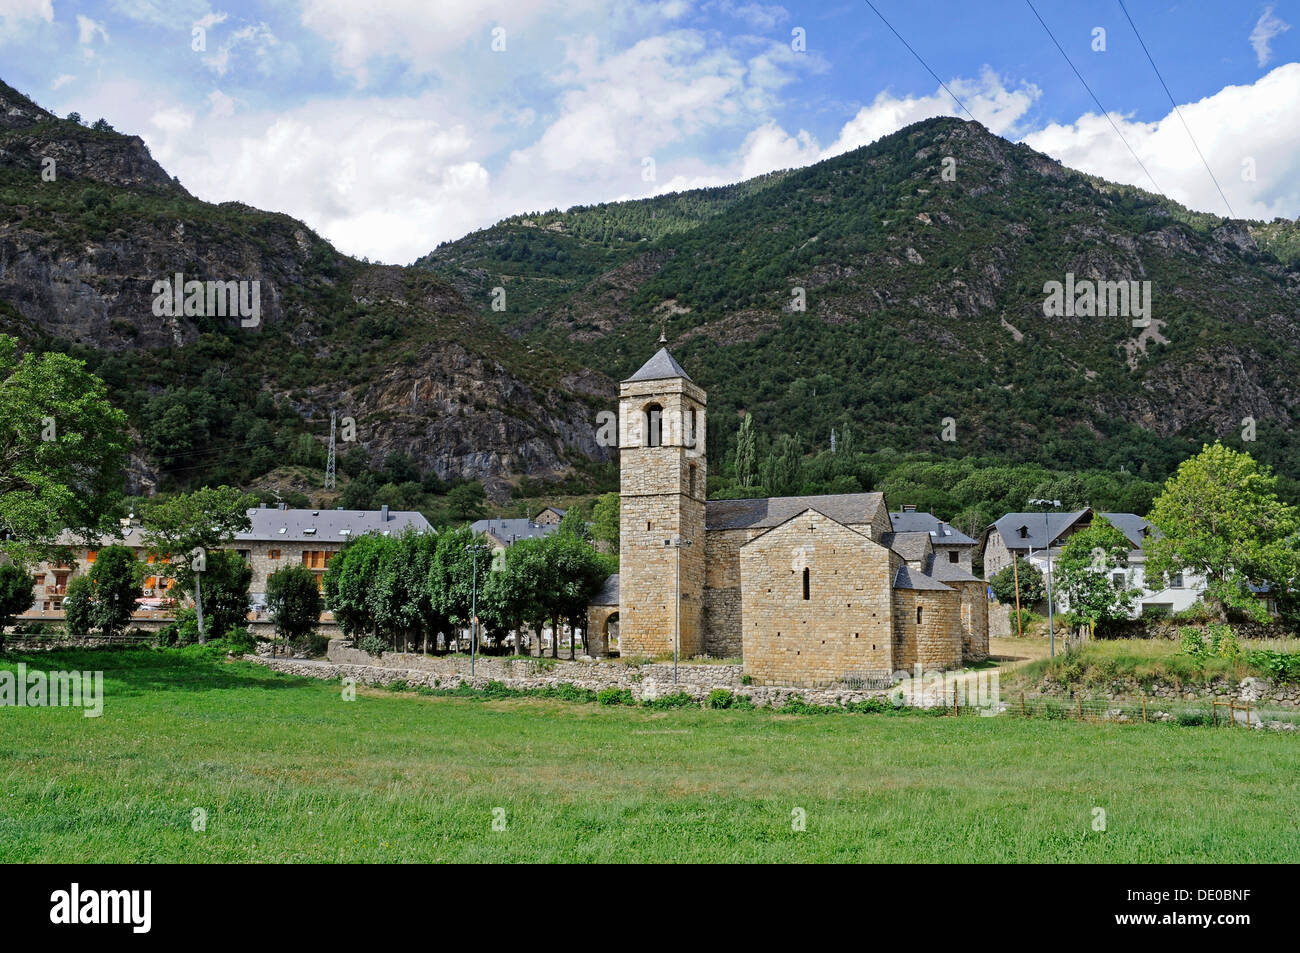 Sant Feliu, église romane, Site du patrimoine culturel mondial de l'UNESCO, Barruera, la Vall de Boi, Pyrénées, province de Lleida Banque D'Images